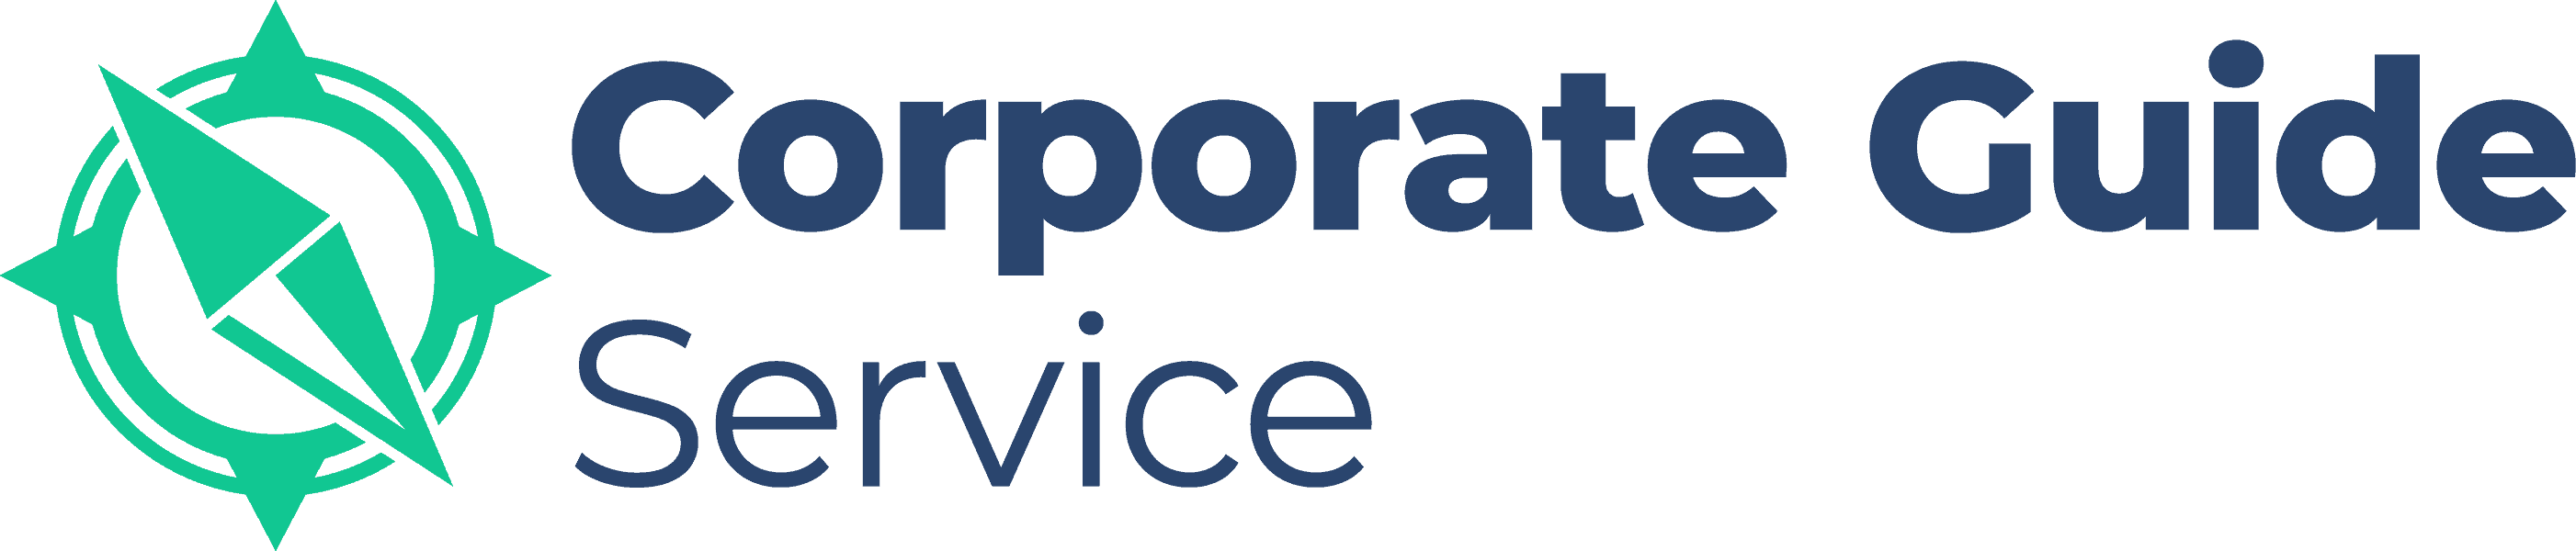 Corporate Guide Service